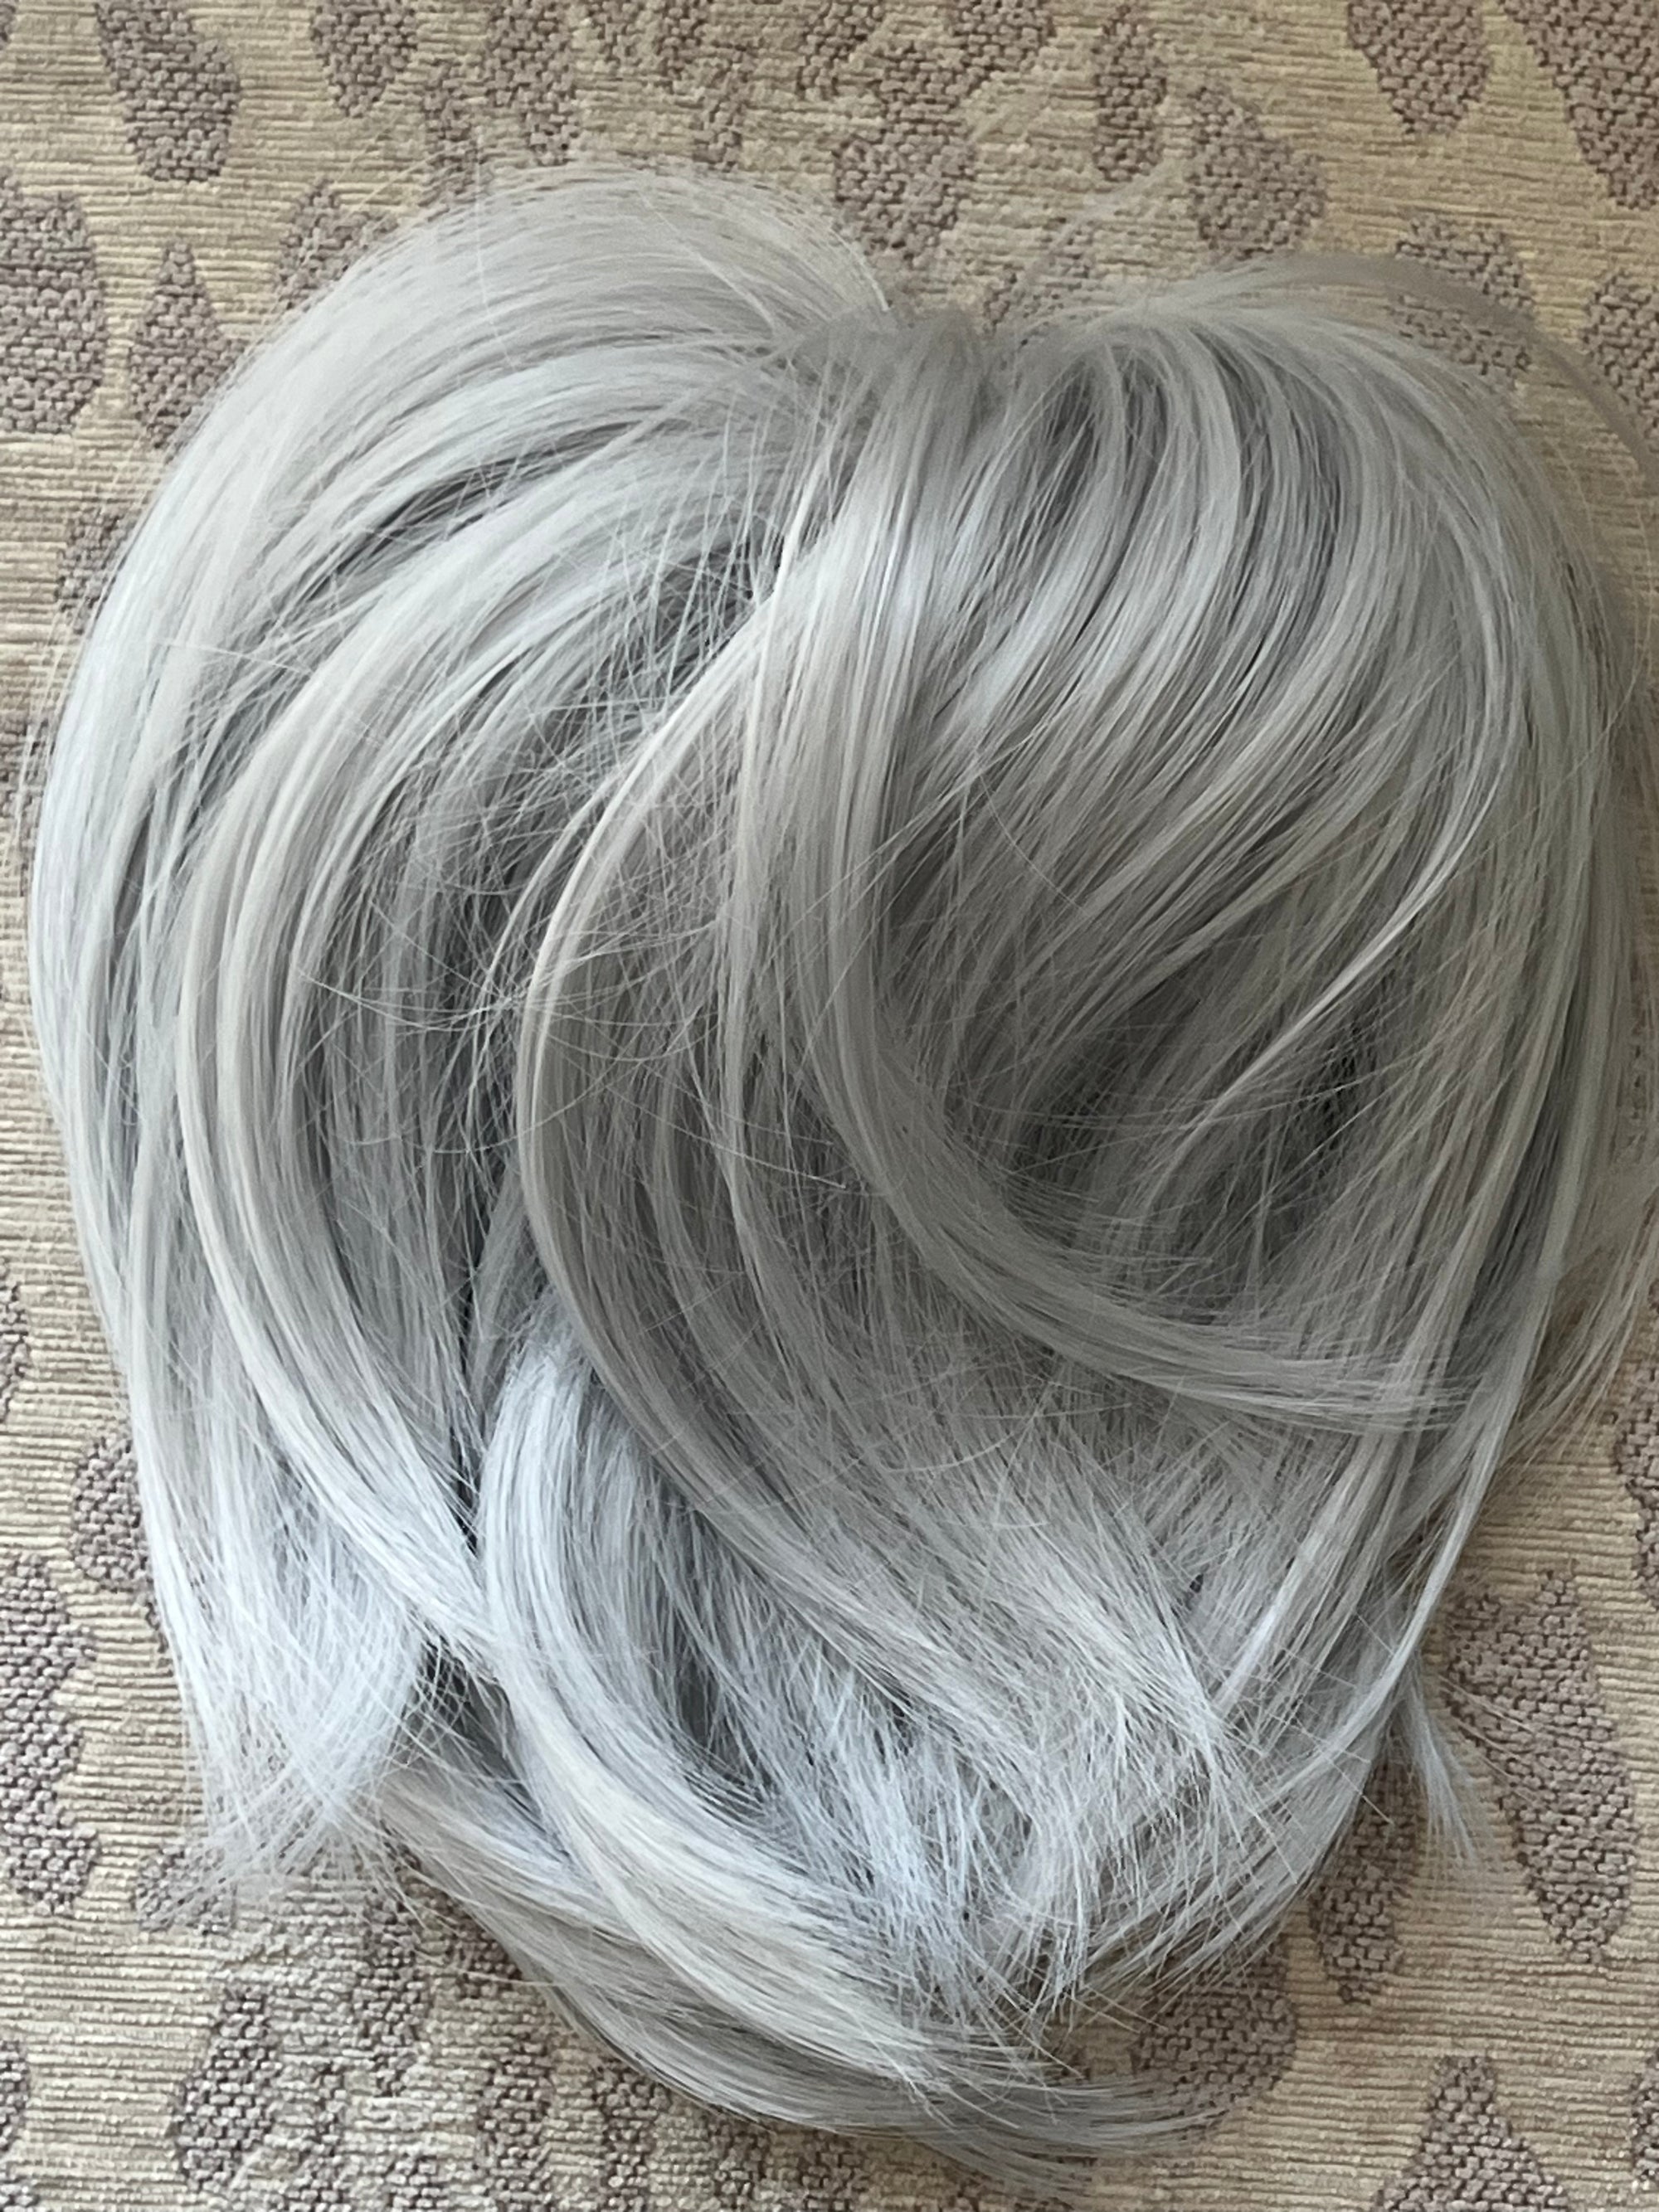 Tillstyle elastic Hair scrunchie bun tousled updo chignon light grey blonde white straight hair